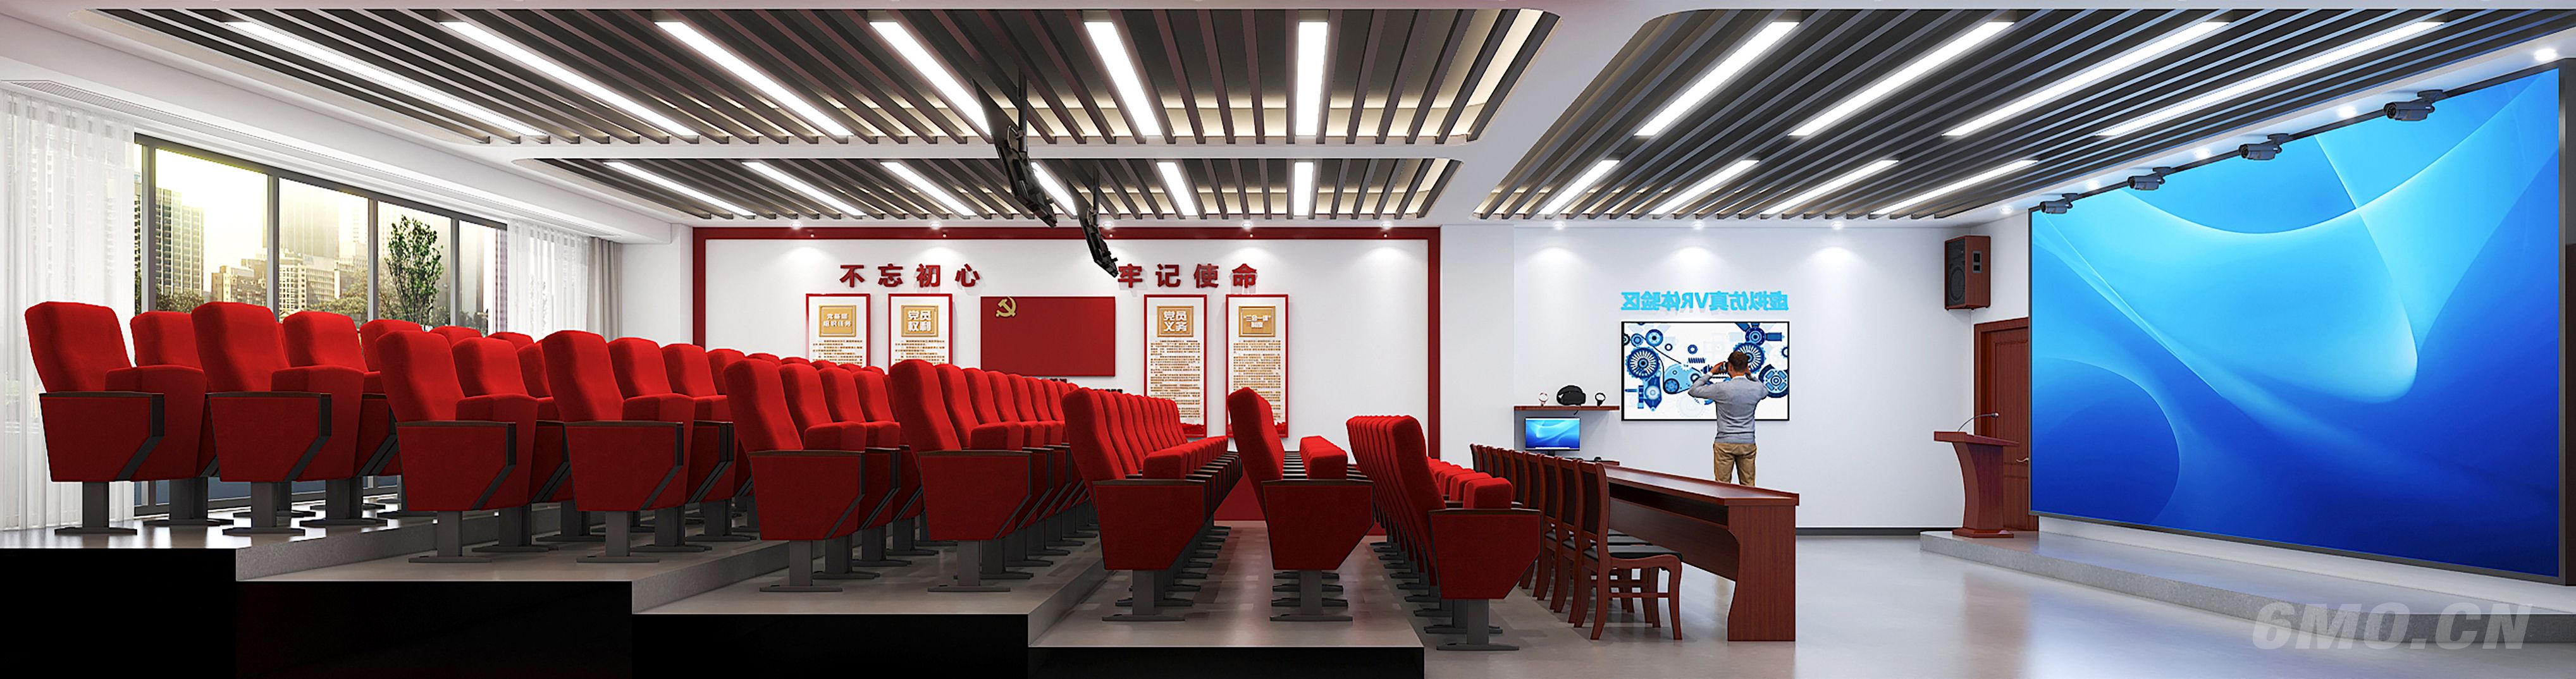 大学VR教室，VR眼镜，电影院椅子，党建形像墙，人物